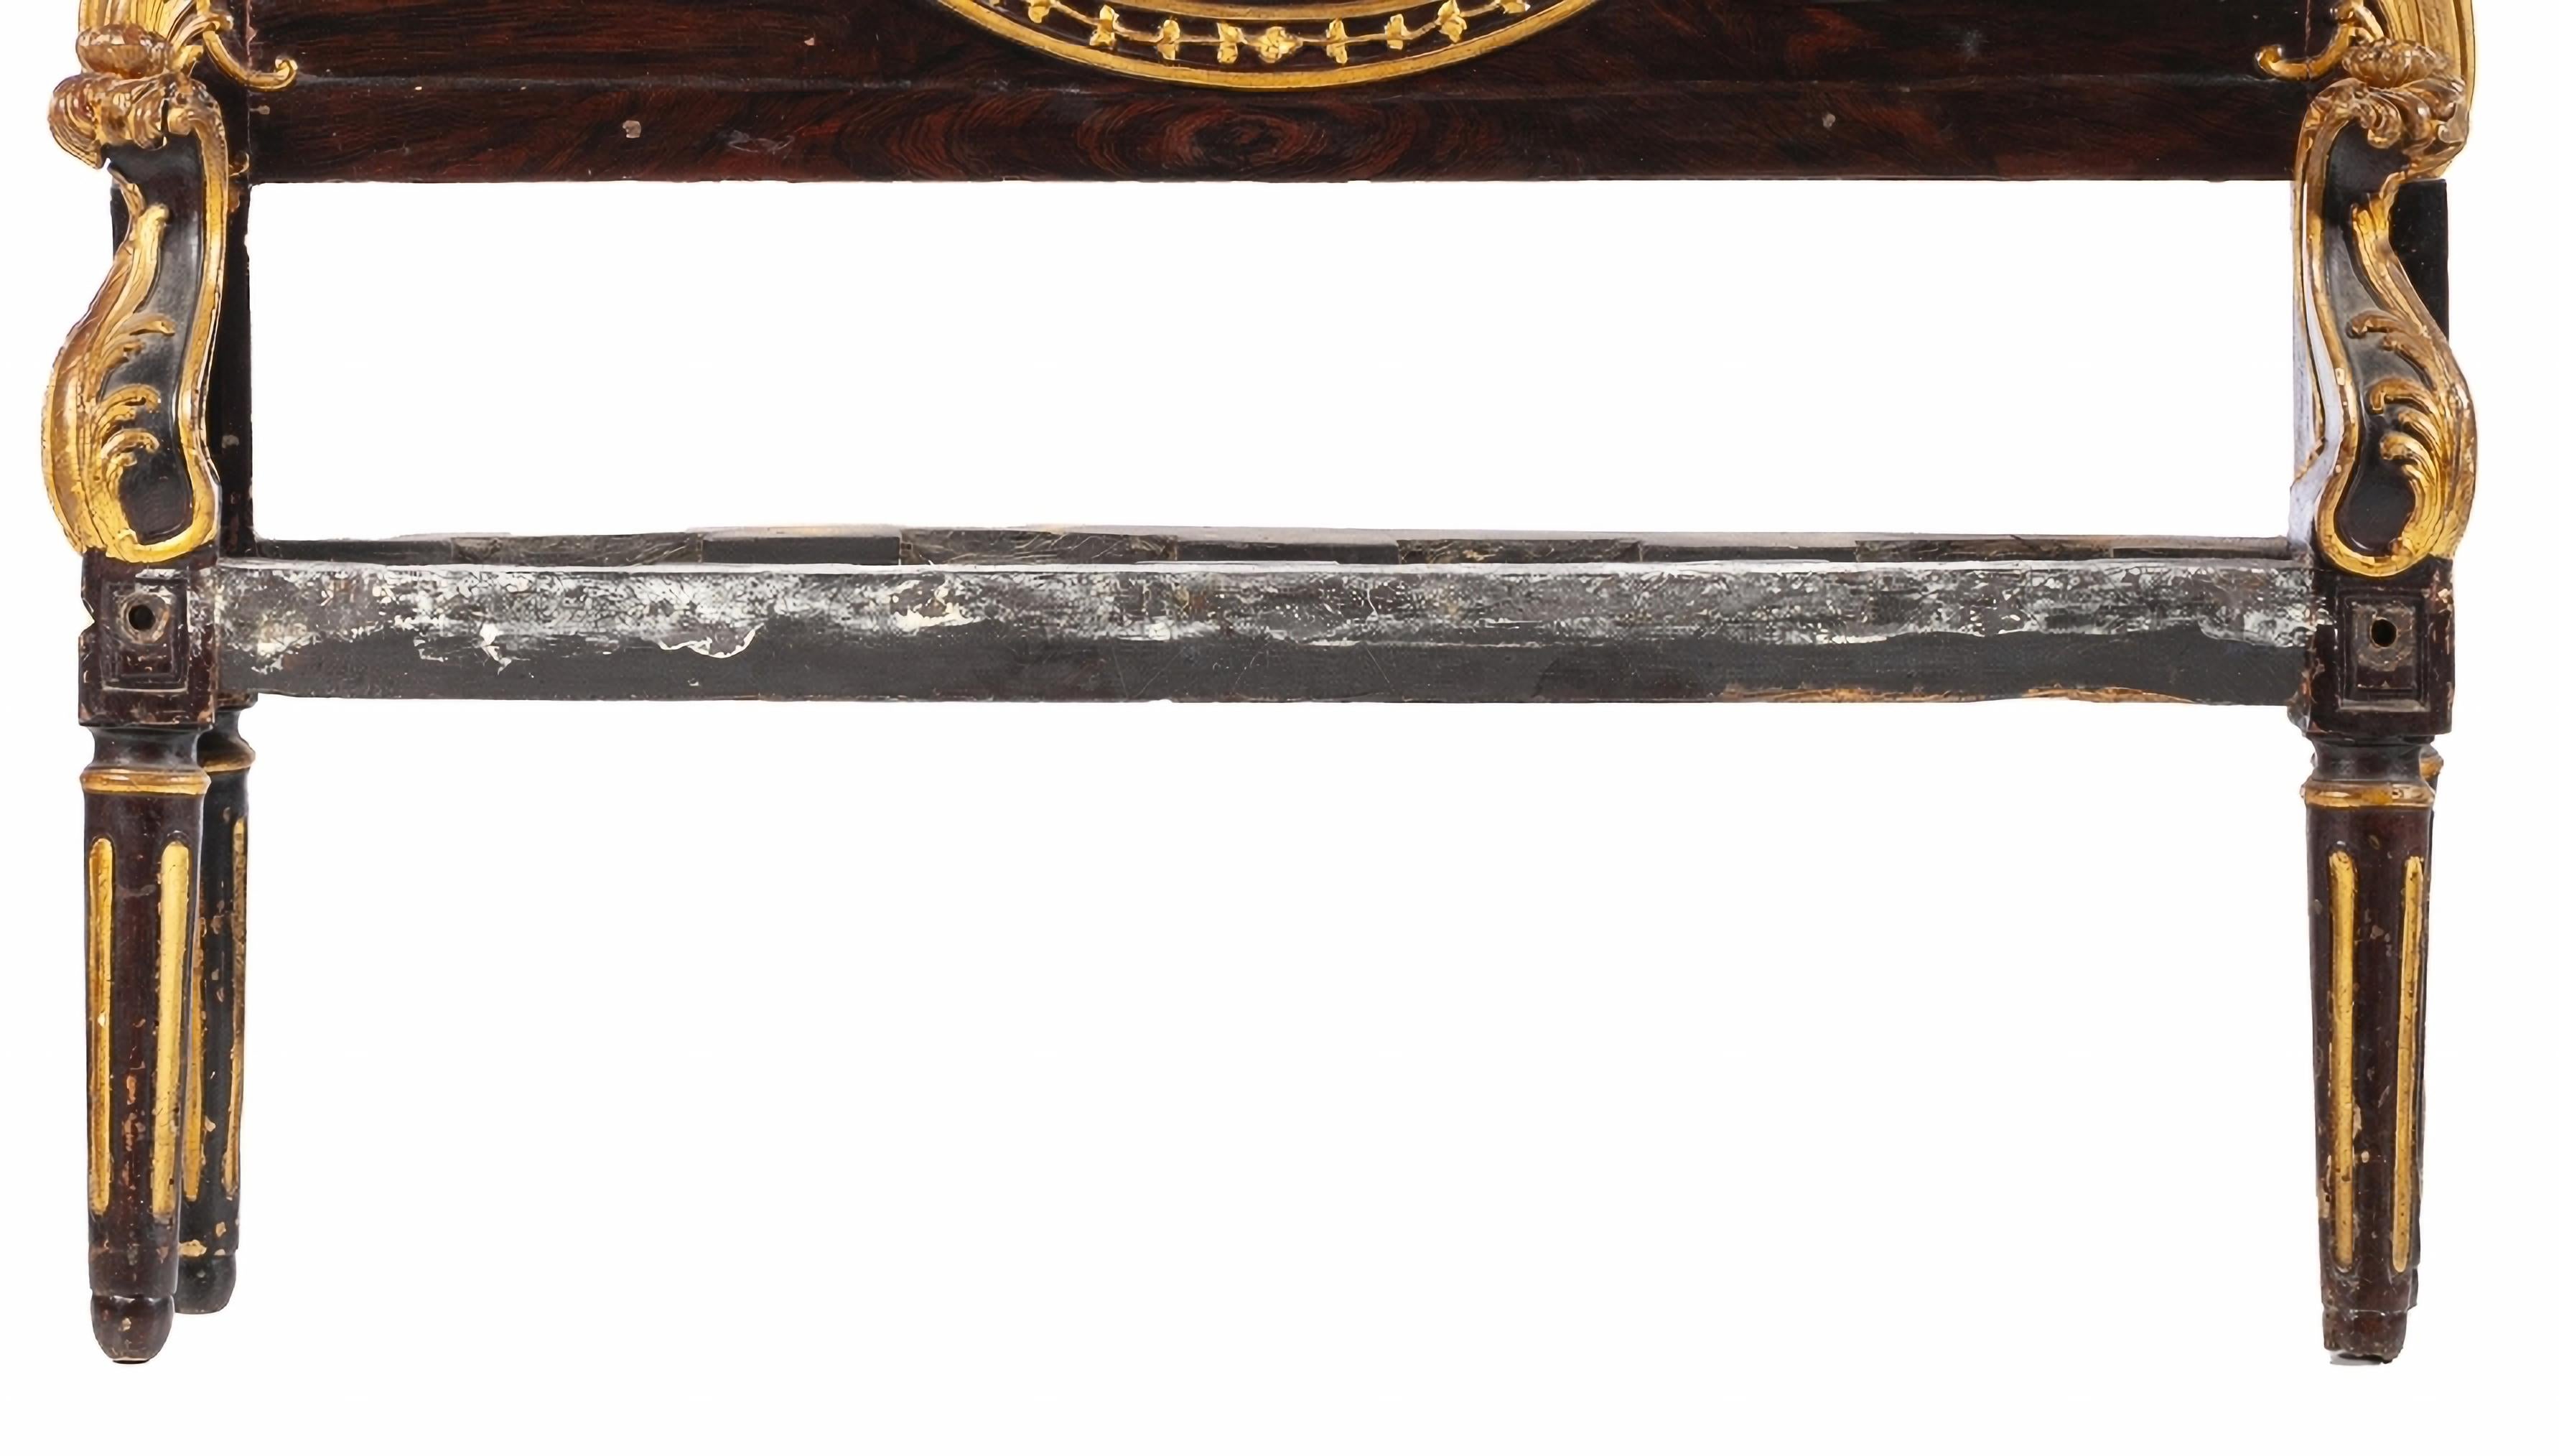 RARE BOUCLES PORTUGUese du 19ème Siècle

en bois peint et doré.
Table tapissée de damas dans les tons bordeaux.
Quelques petits défauts d'époque.
Dim. : 180 x 131 cm
bonnes conditions